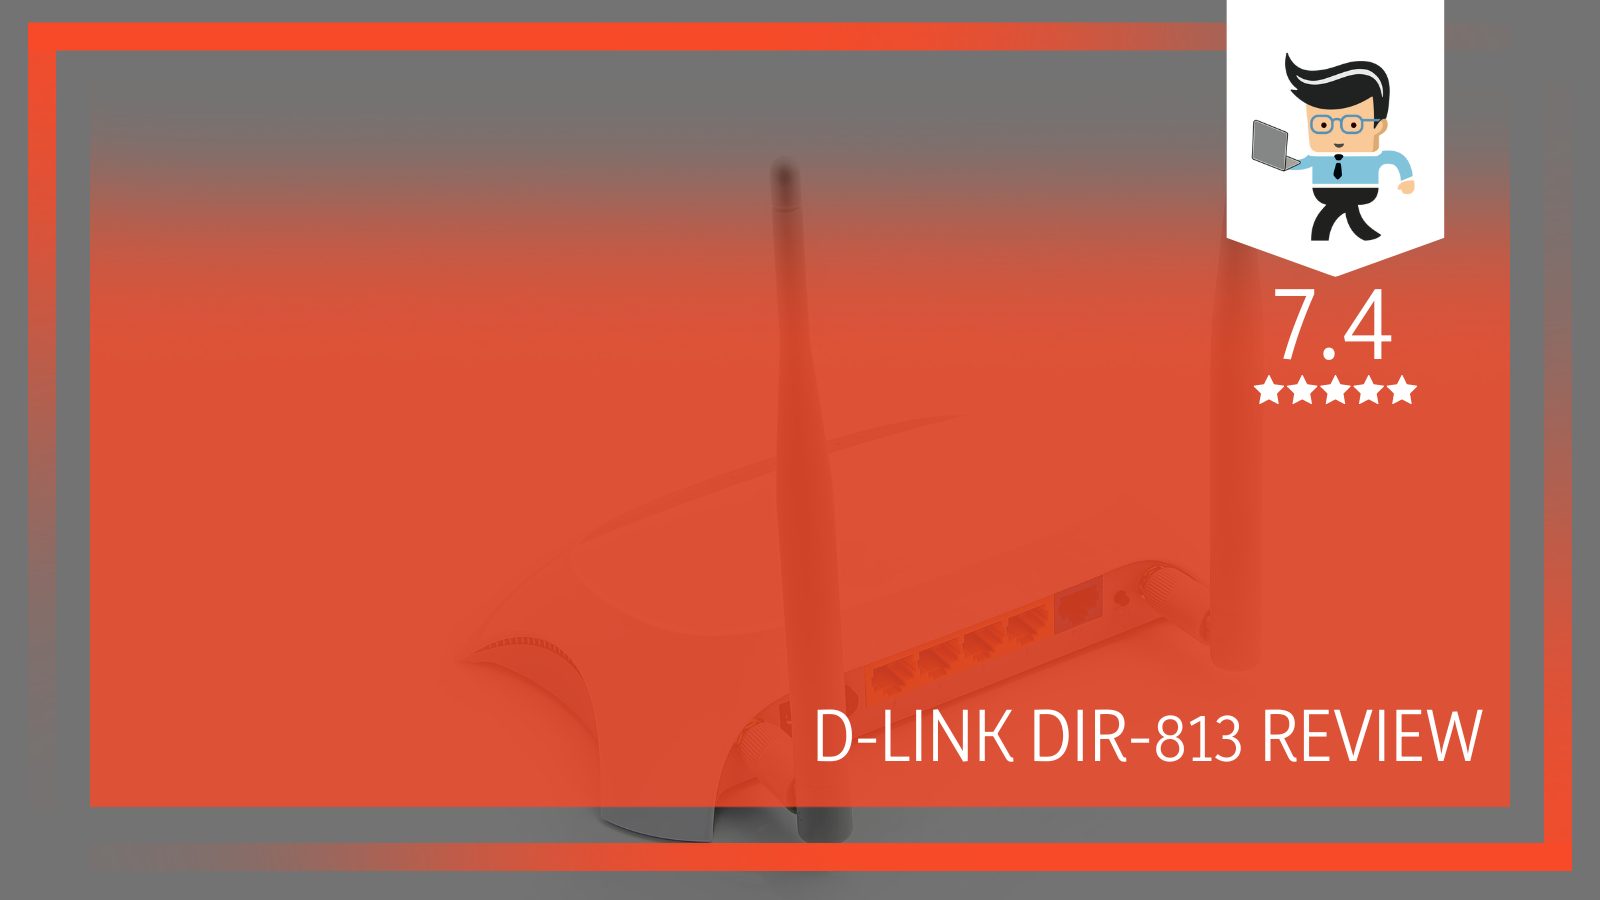 D-Link DIR-813 Router Review